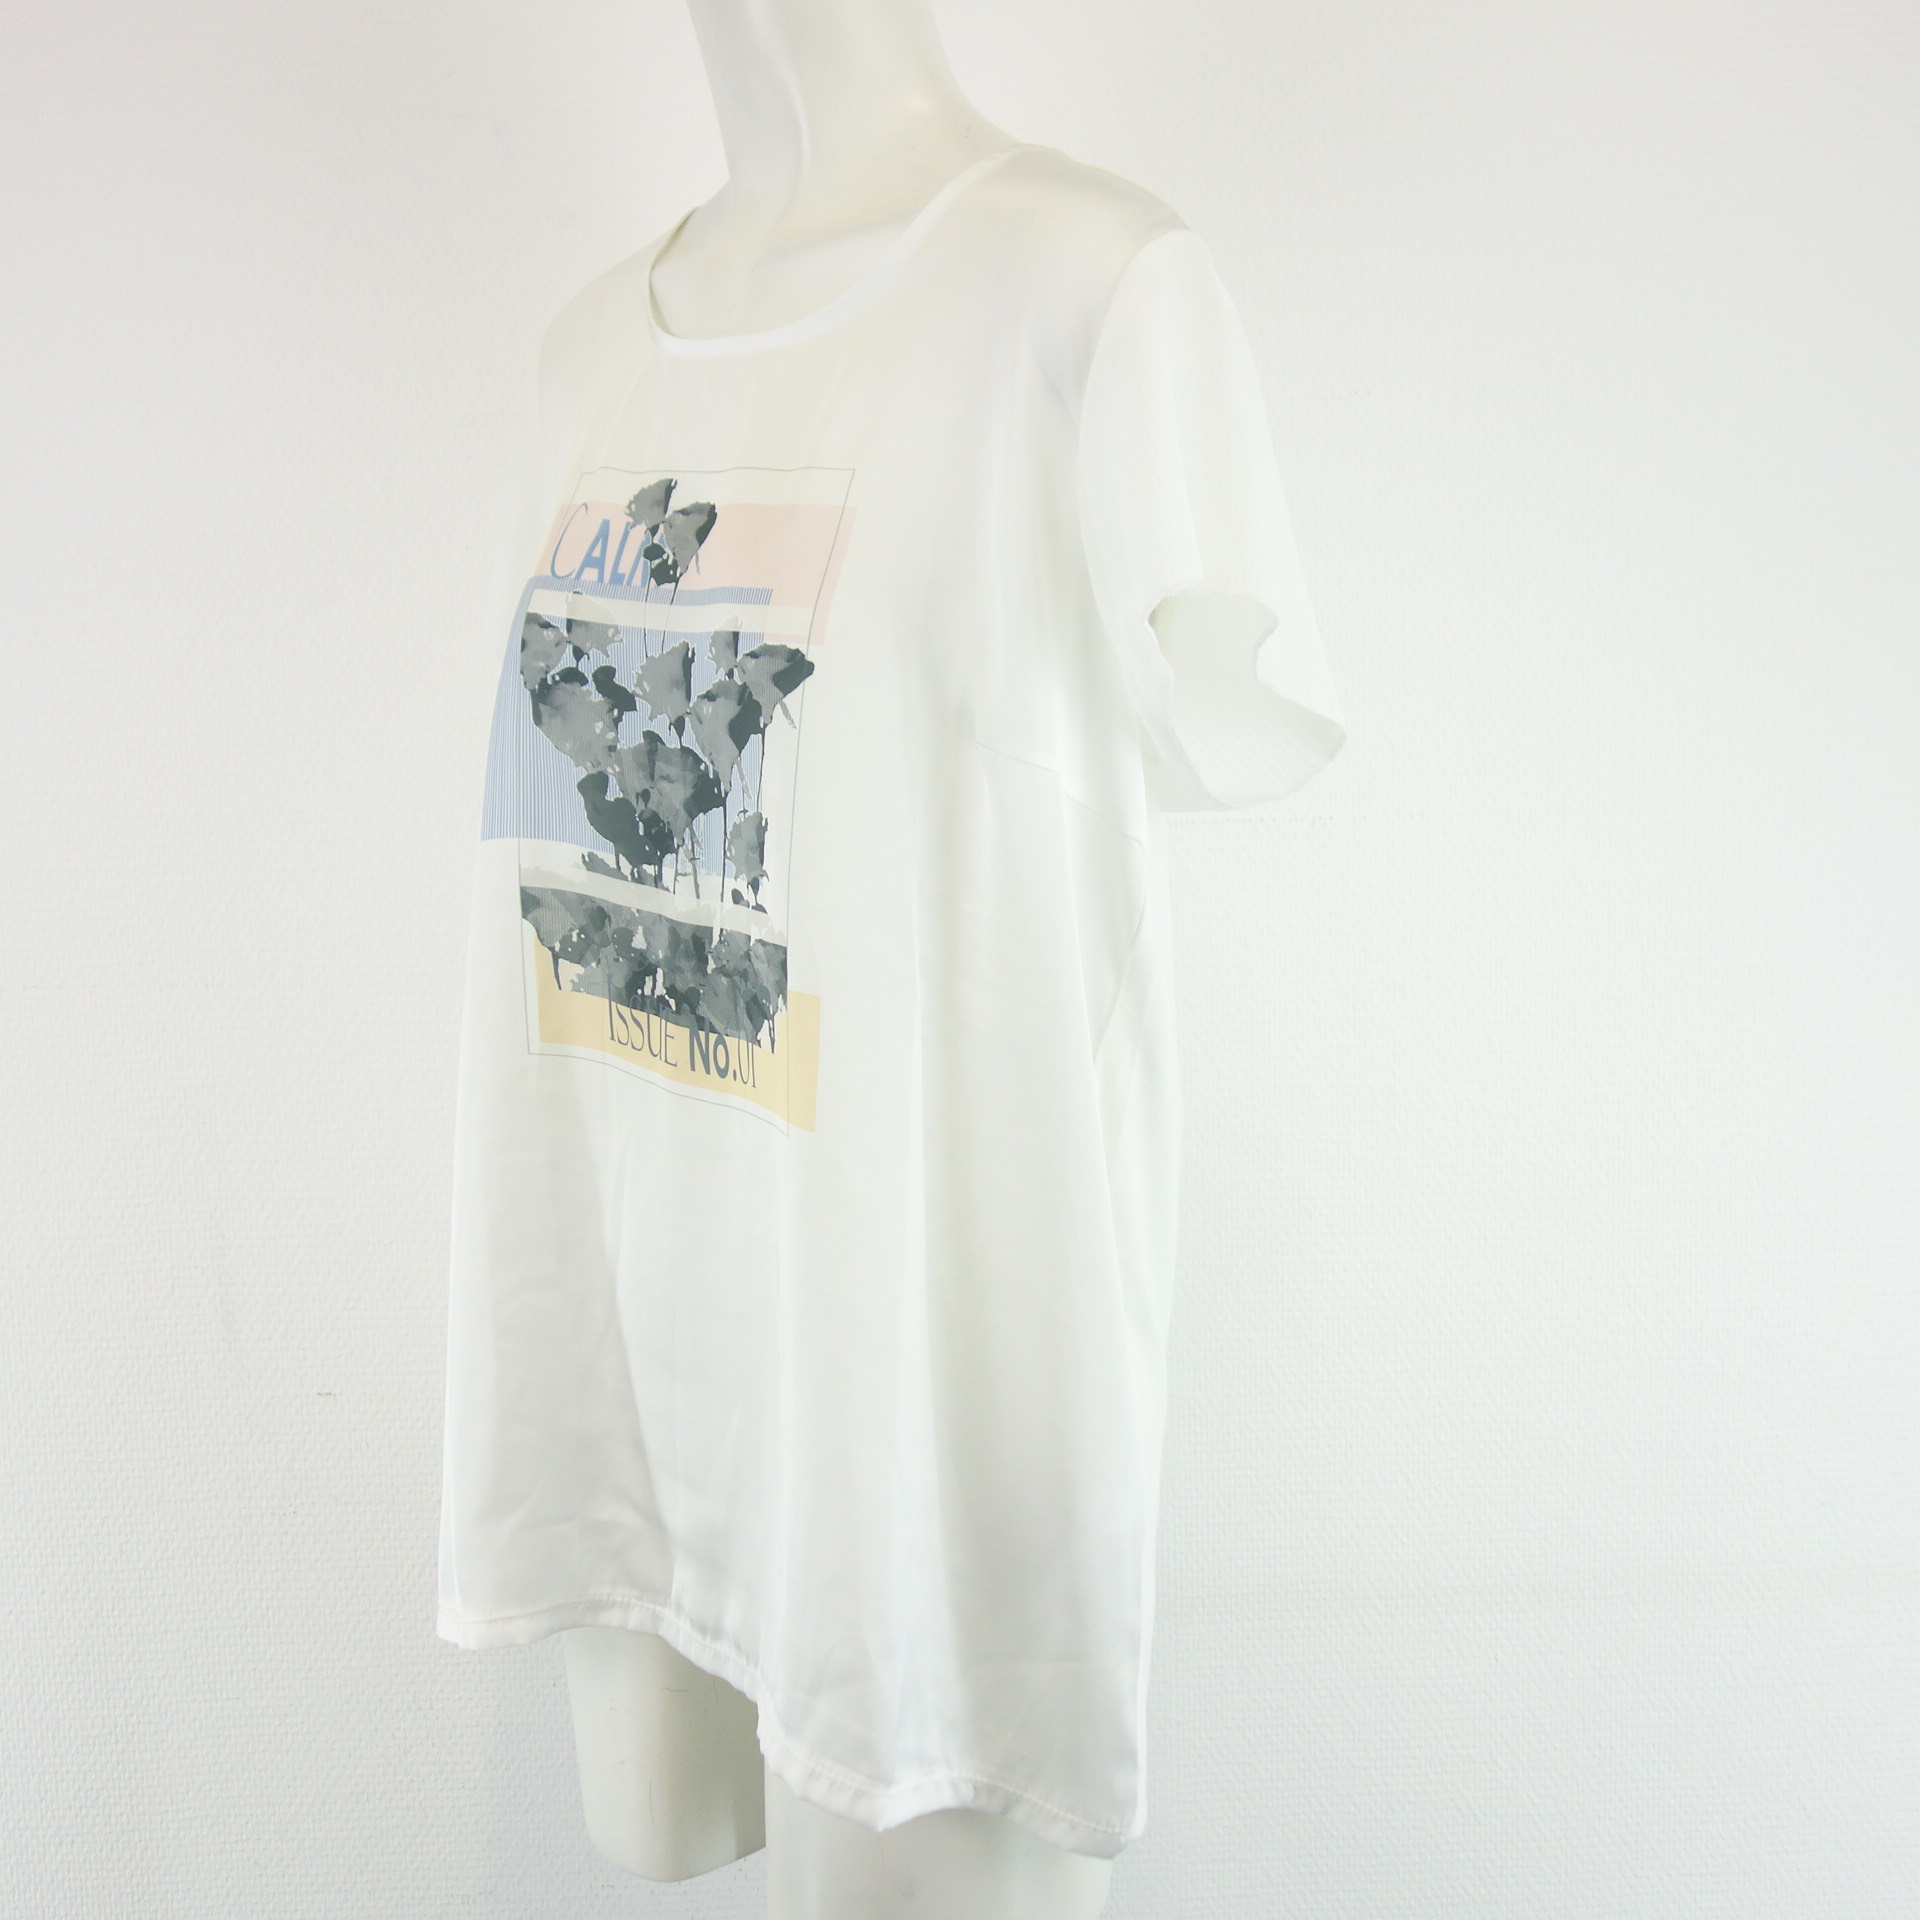 MORE & MORE Damen T-Shirt T Shirt Oberteil Weiß Print Größe 42 Kurzarm